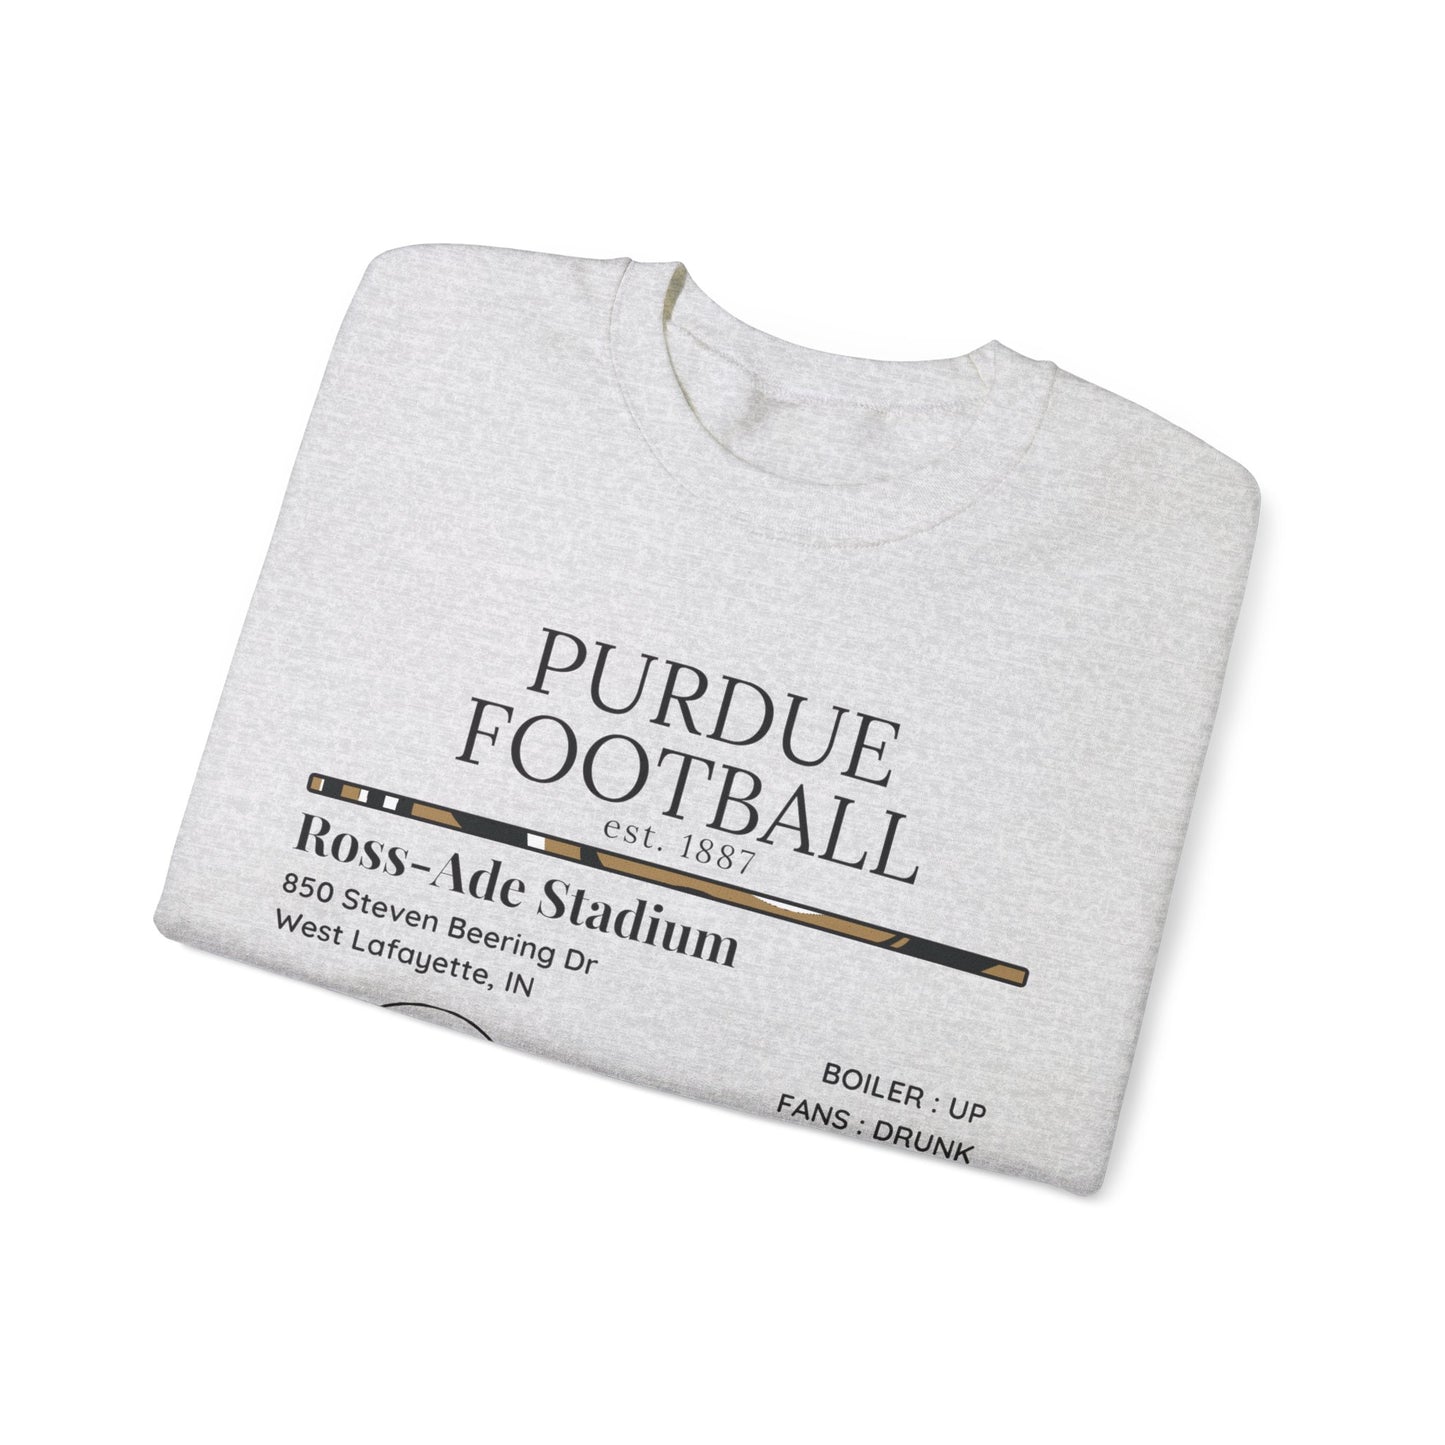 Purdue Football Sweatshirt